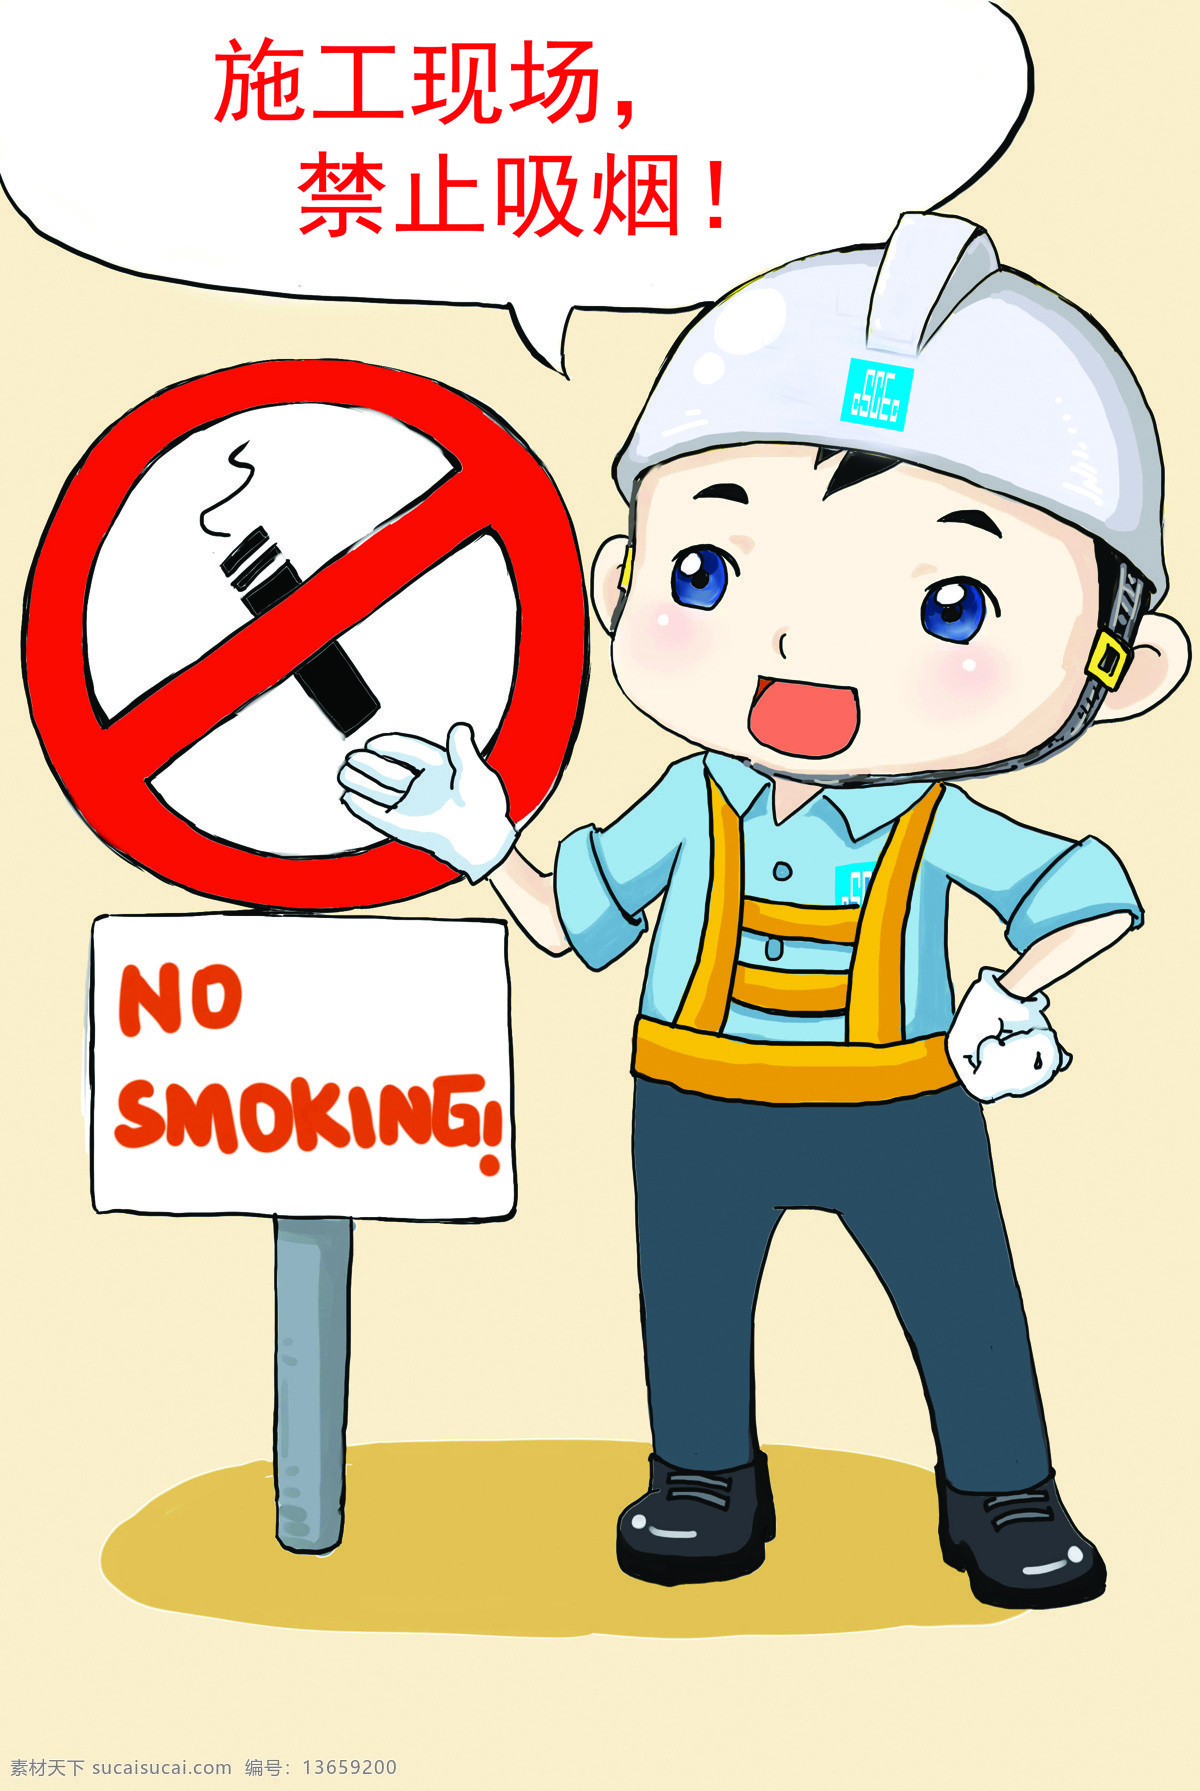 新版 平平安安 号 图 高清 7号图 7号 禁烟 禁止吸烟 平平 安安 中建 中国建筑 卡通人物 卡通 漫画 工地宣传 工地 安全宣传 安全 可爱 动漫动画 动漫人物